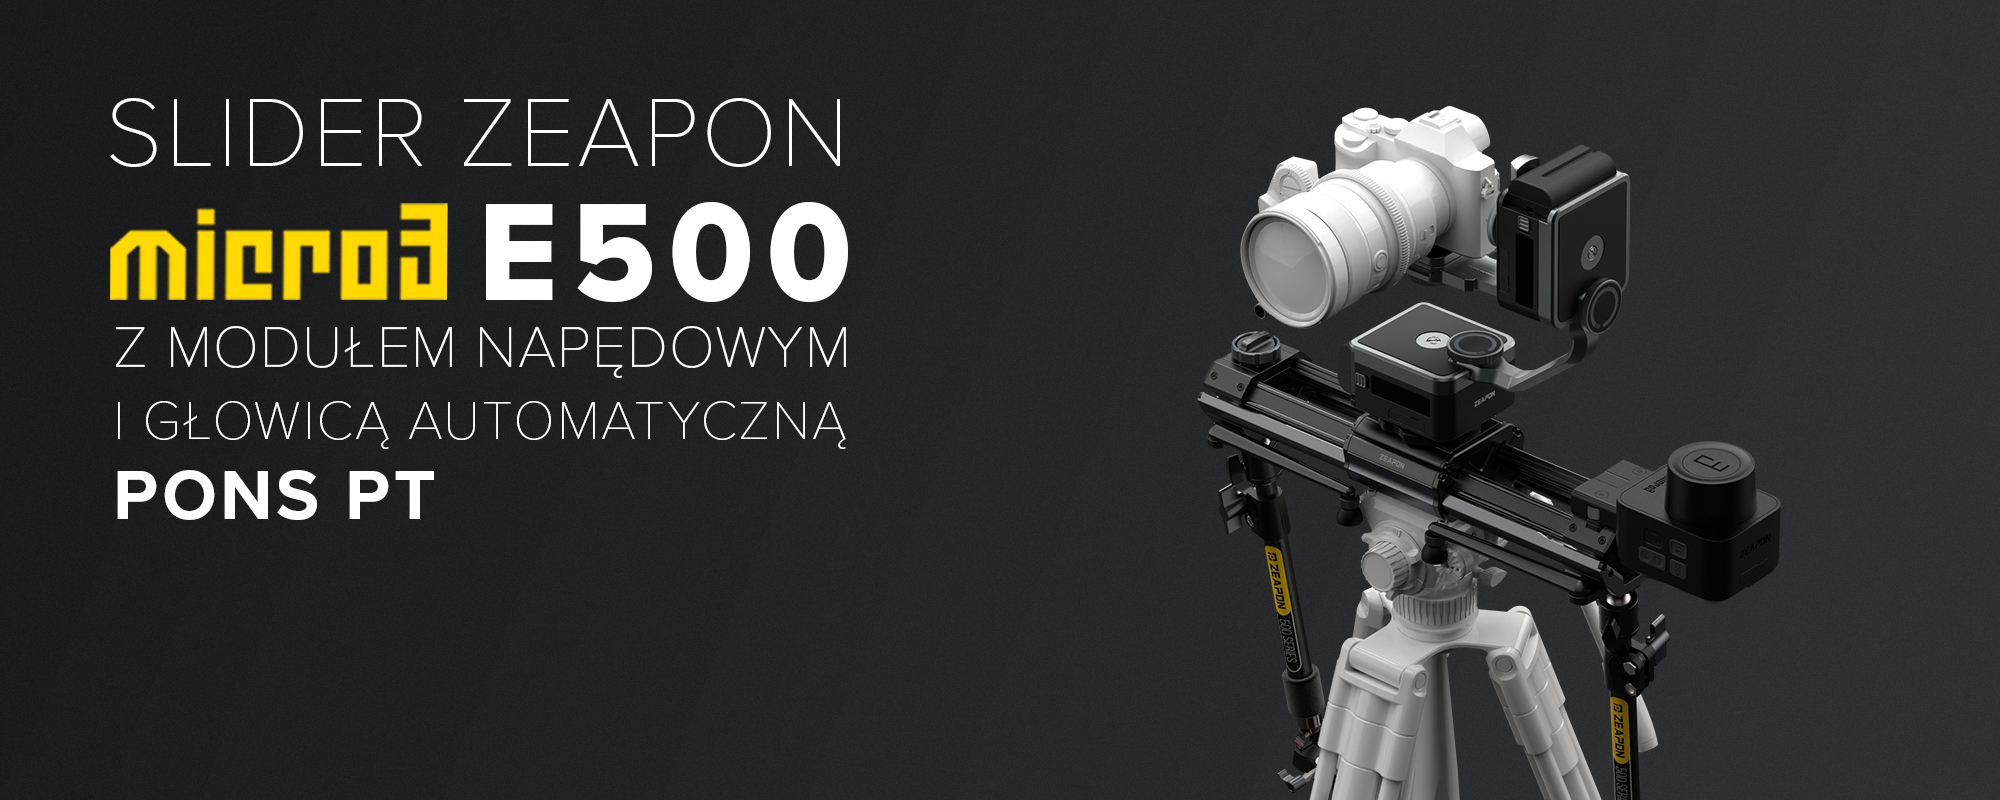 Slider Zeapon Micro 3 E500 z modułem napędowym i głowicą automatyczną Pons PT